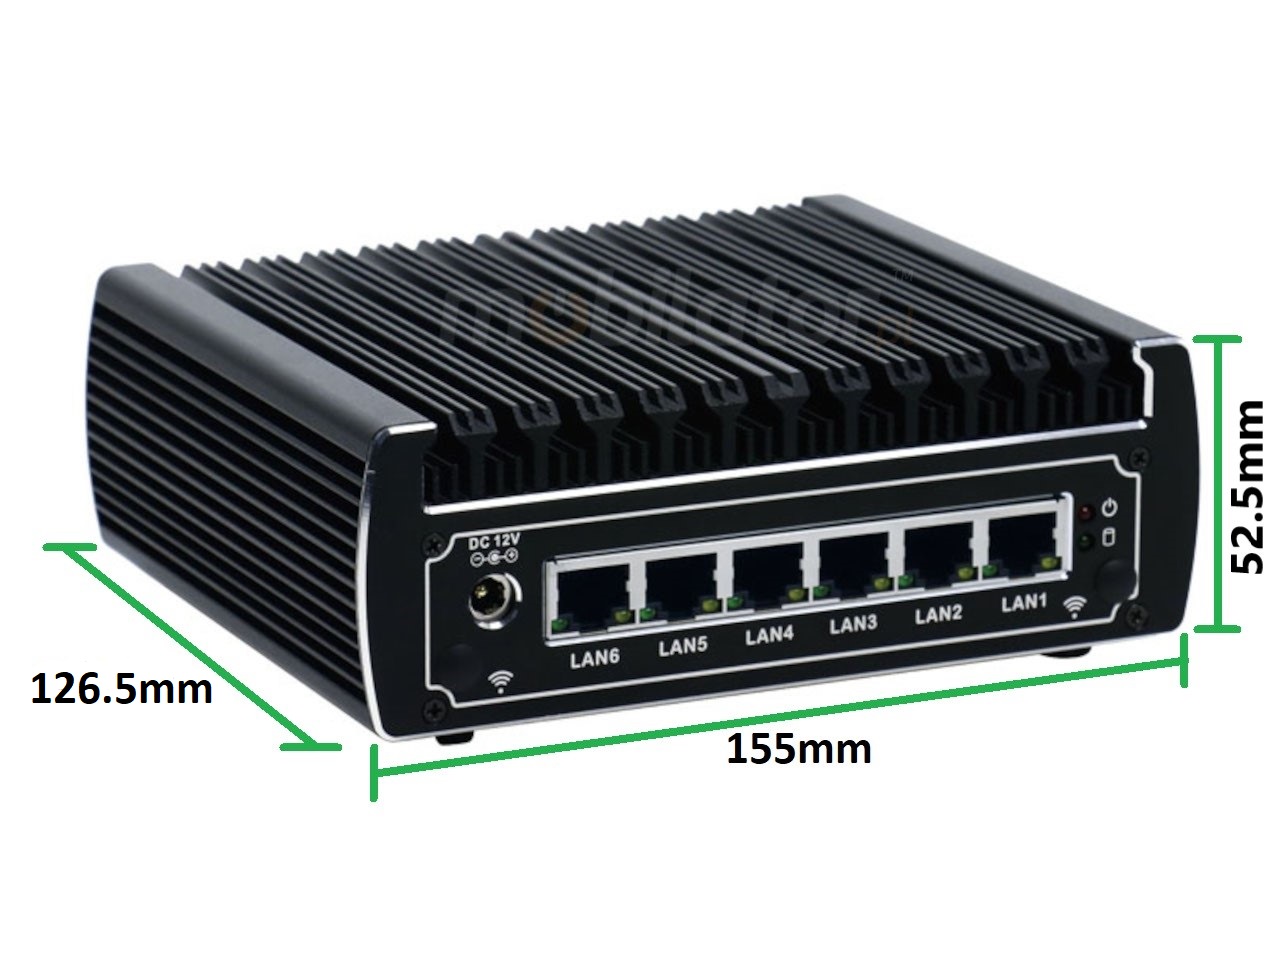  IBOX N133 v.2, wymiary, SSD, DDR4, przemysłowy, mały, szybki, niezawodny, fanless, industrial, small, LAN, INTEL i3